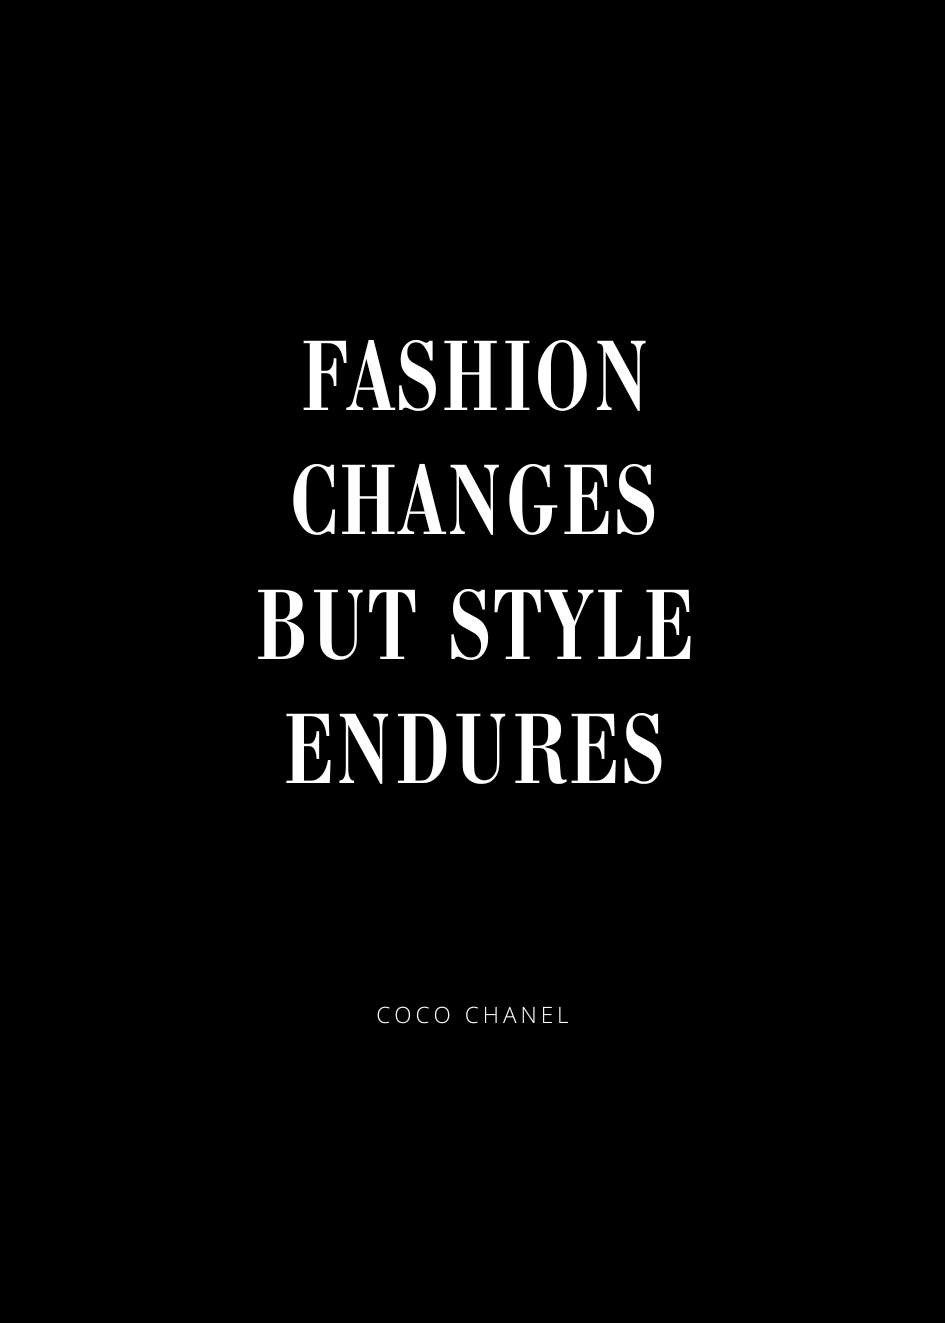 Plakat Cytat Coco Chanel